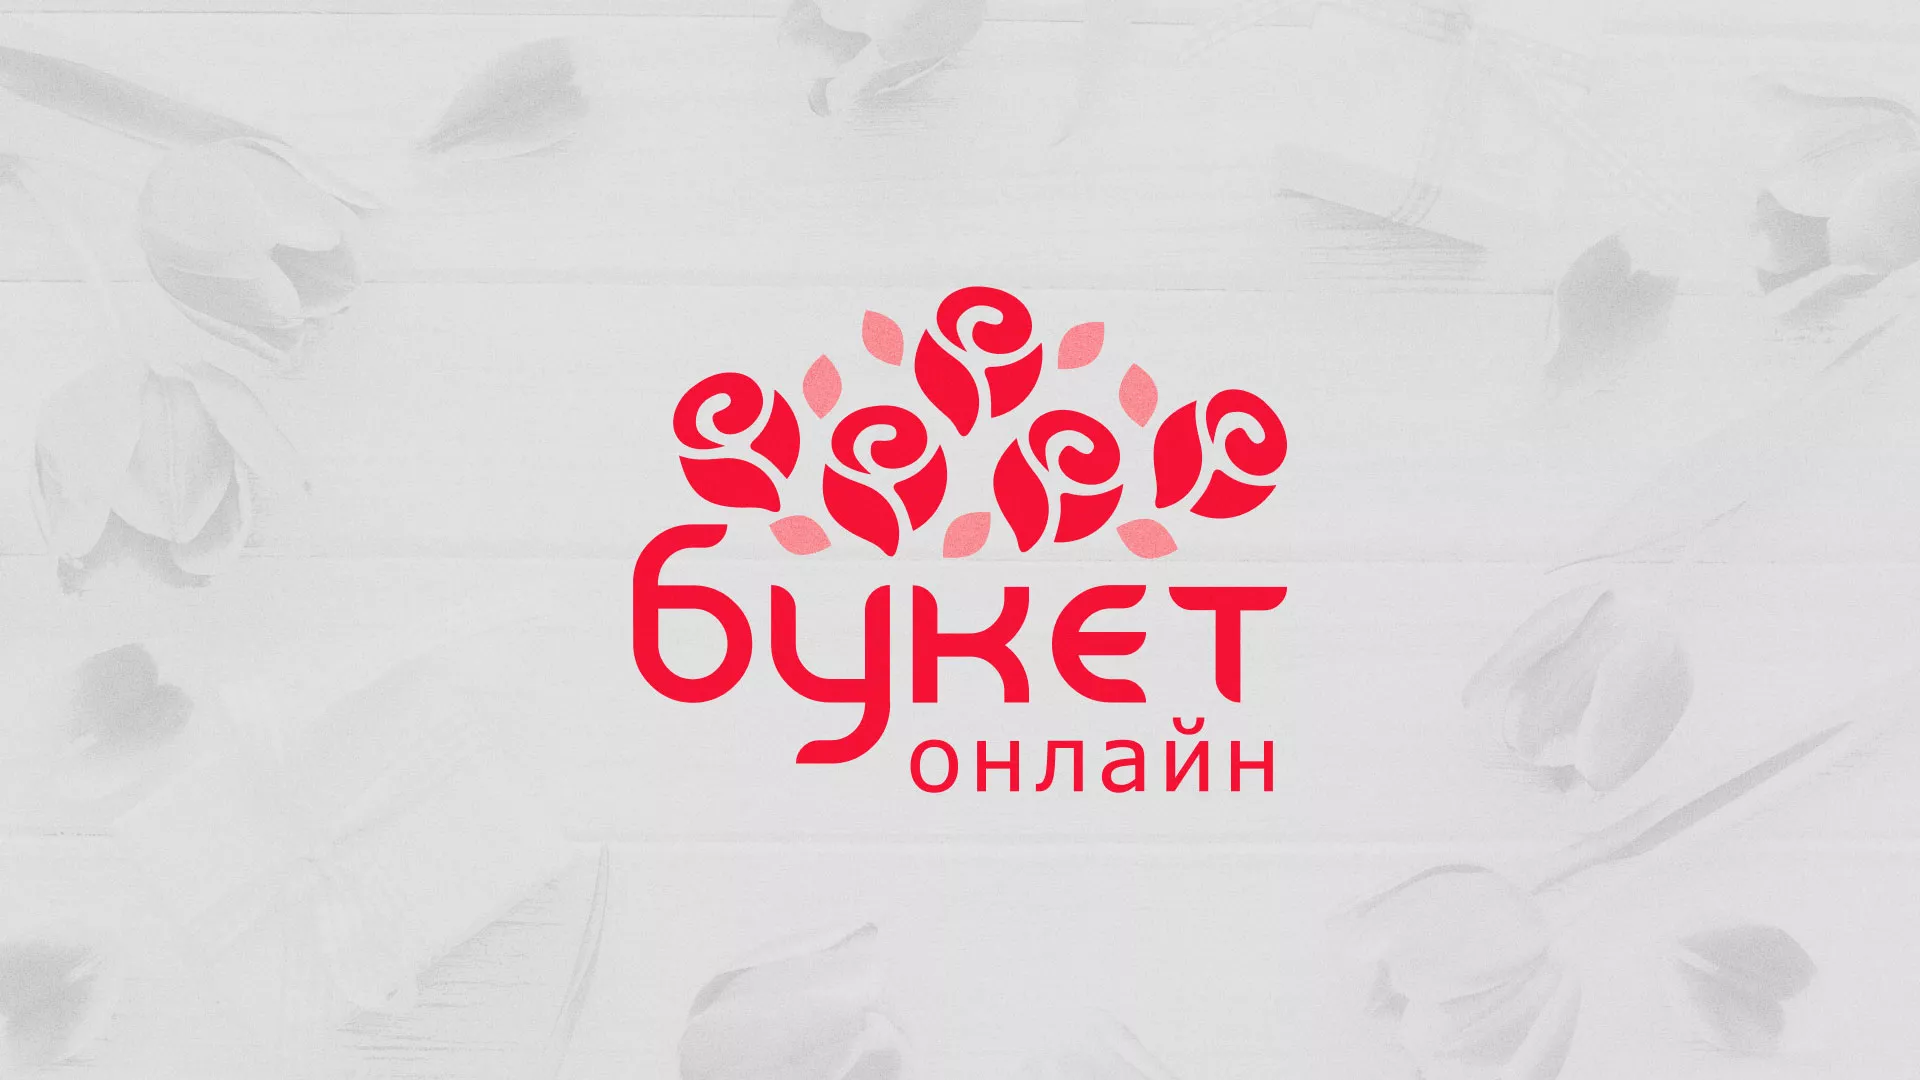 Создание интернет-магазина «Букет-онлайн» по цветам в Баксане